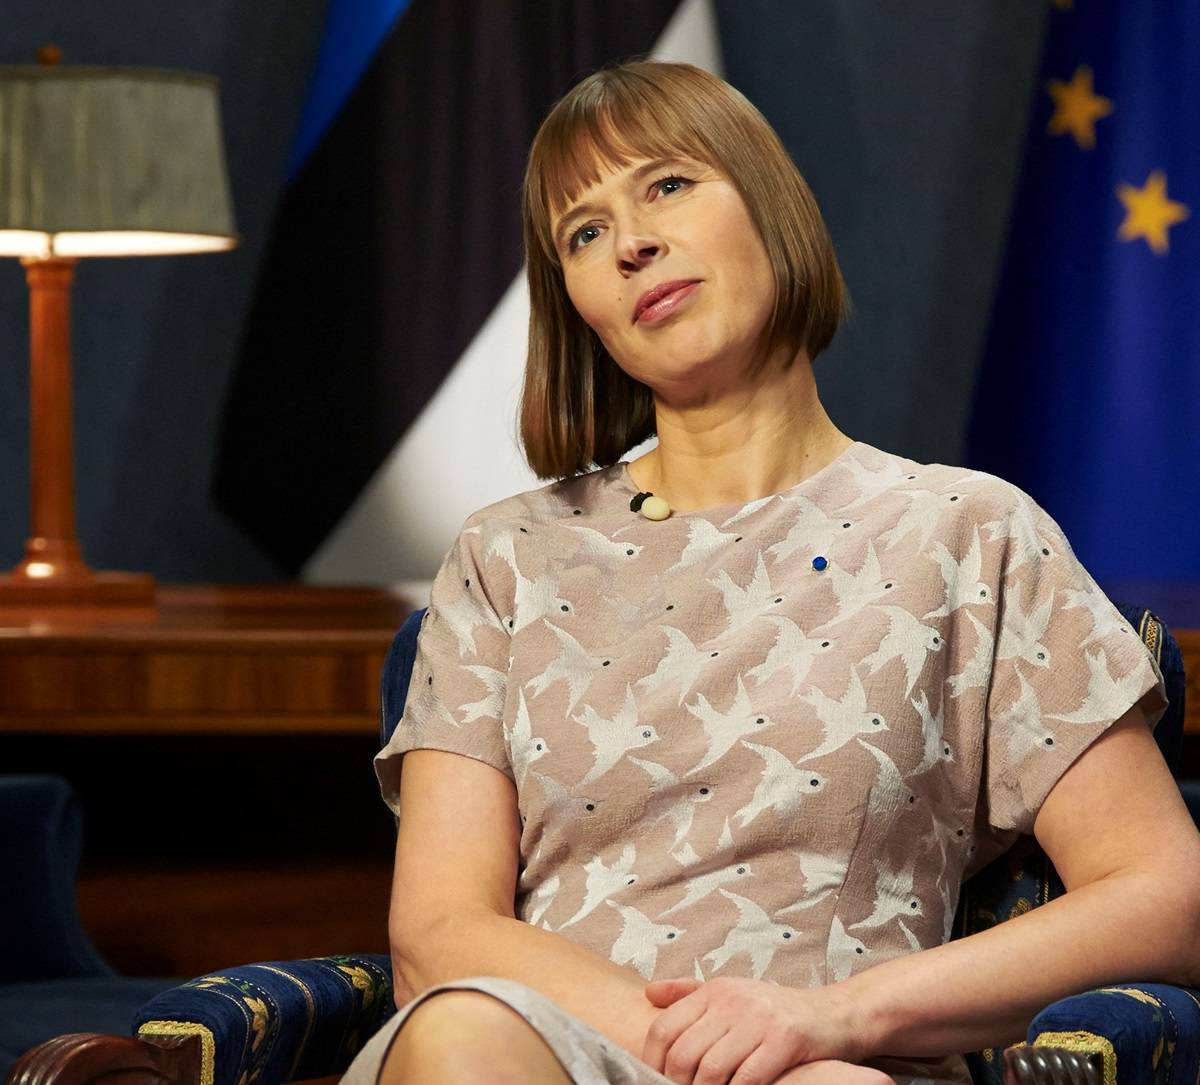 Президент Эстонии Керсти Кальюлайд: «Я не считаю Россию враждебной»